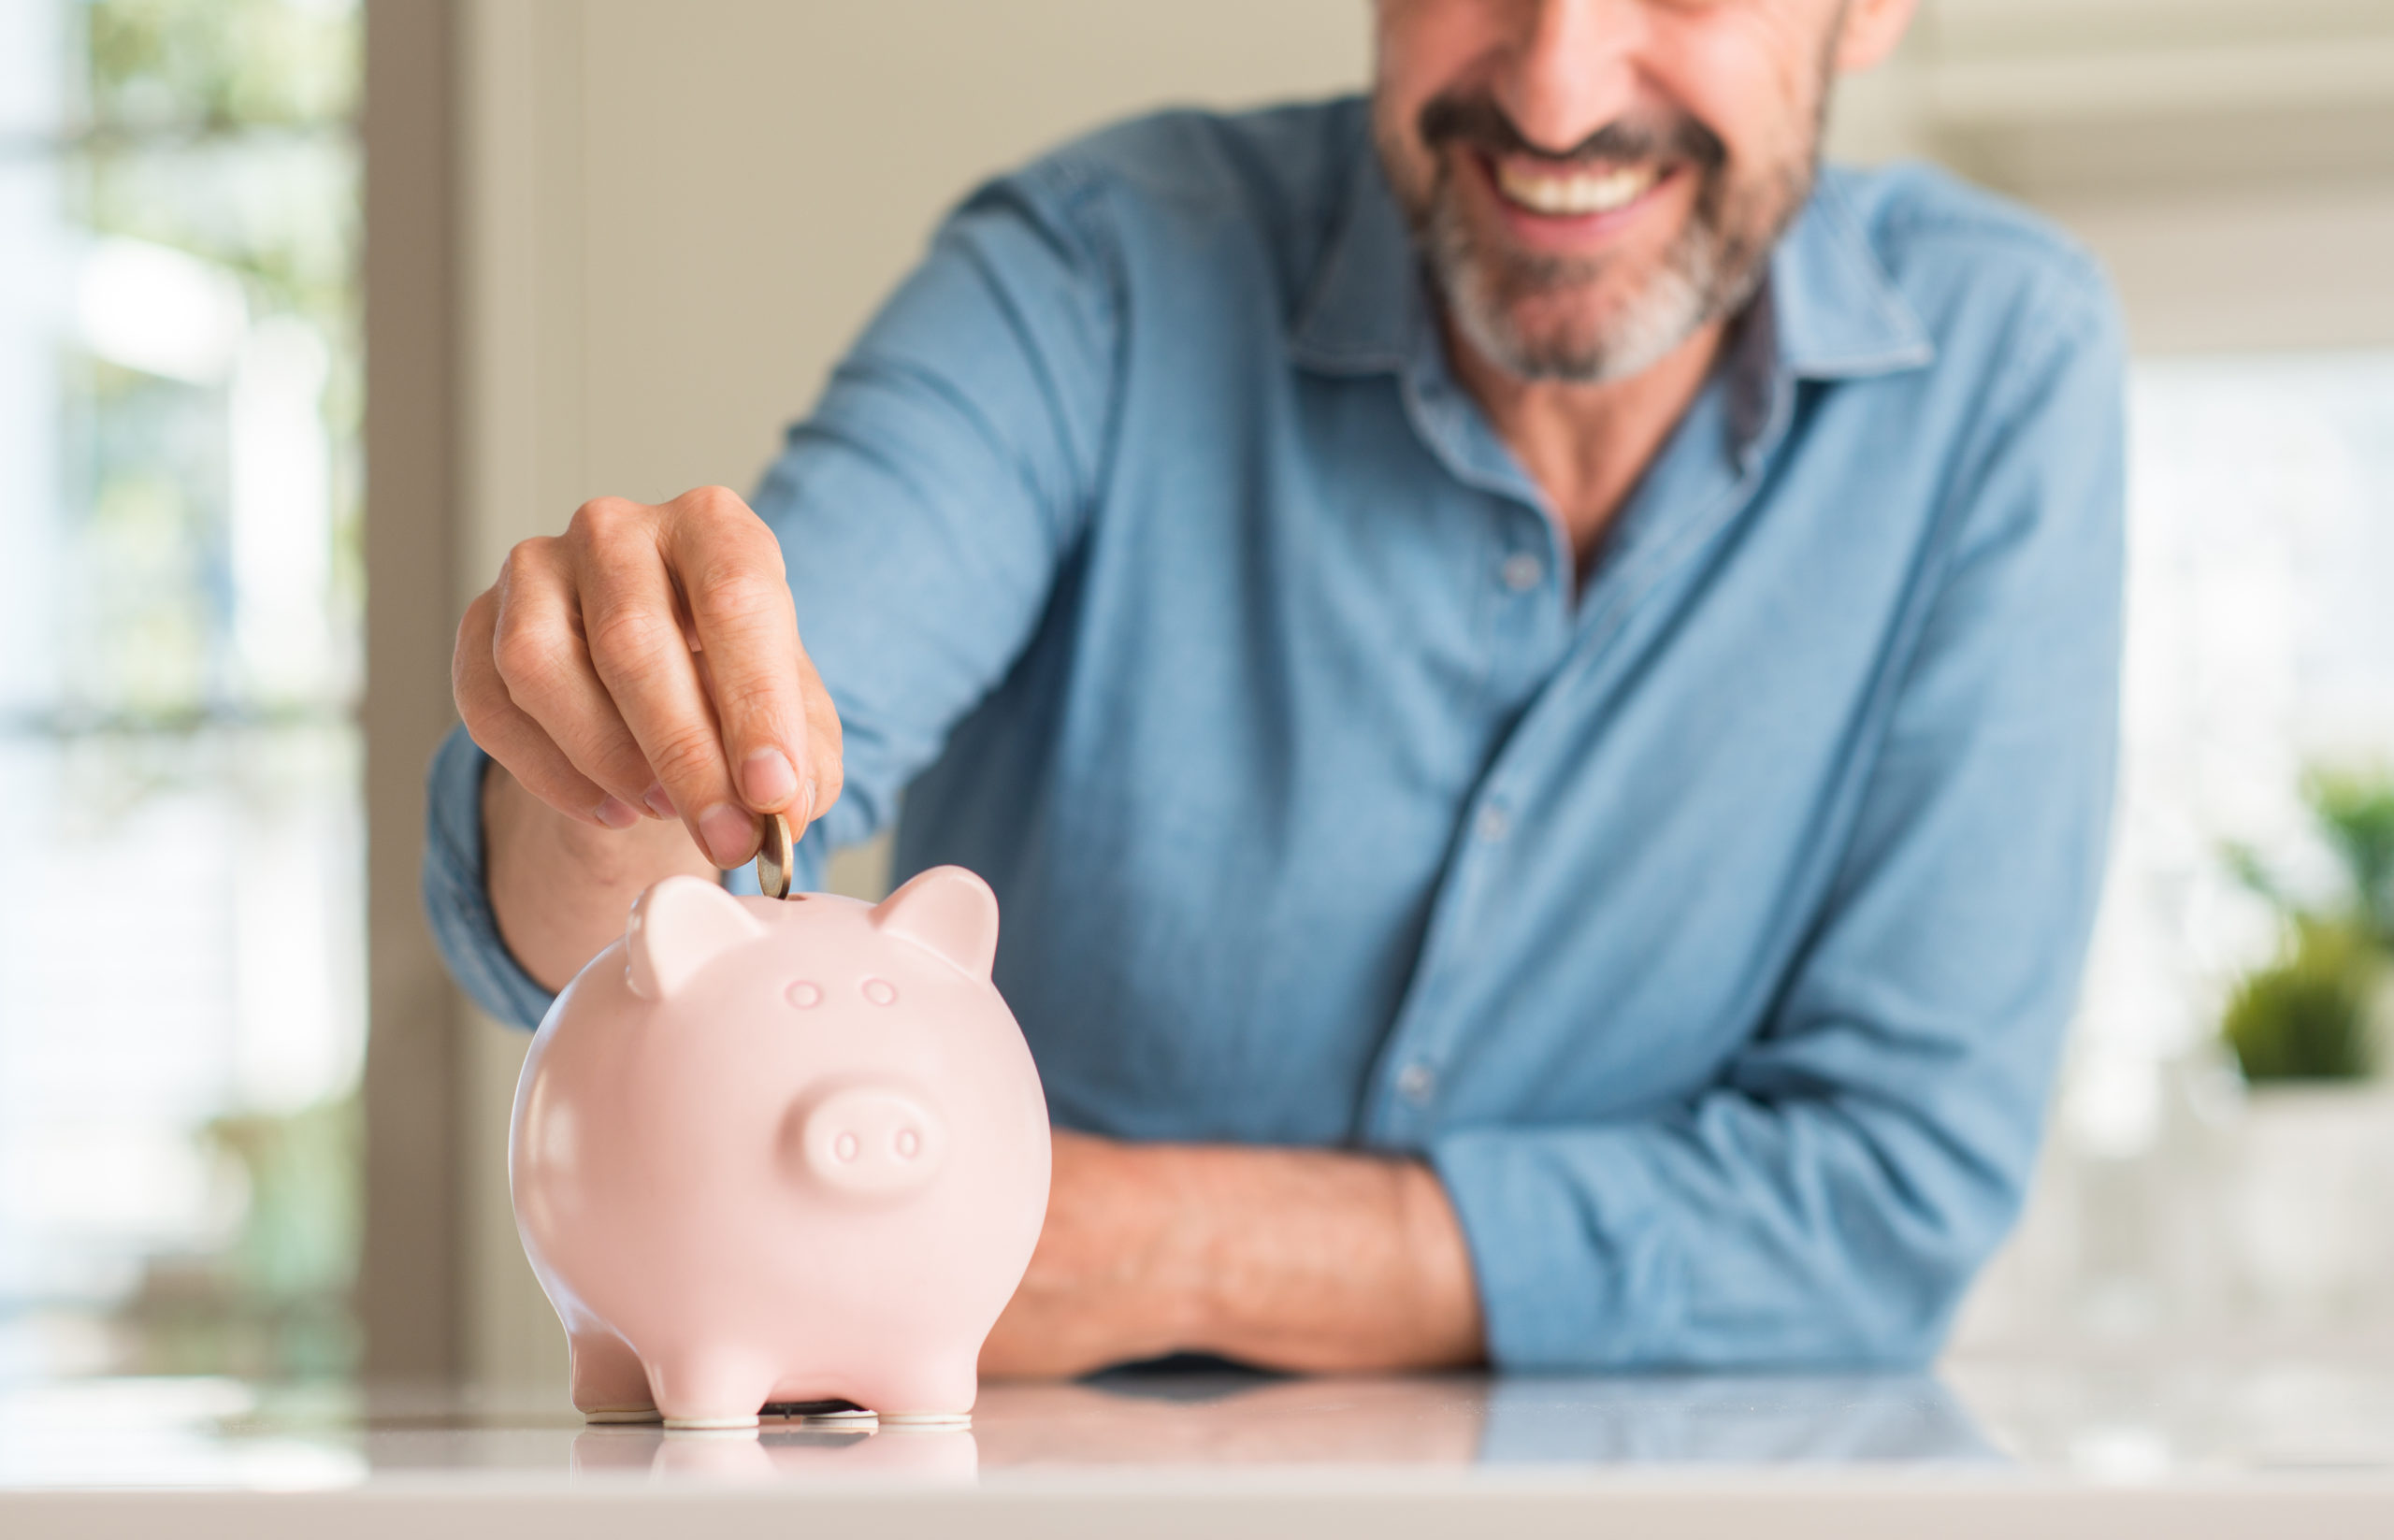 Mann im blauen Hemd und mittleren Alter spart Geld in einem rosa Sparschwein. Er lächelt glücklich und zufrieden.